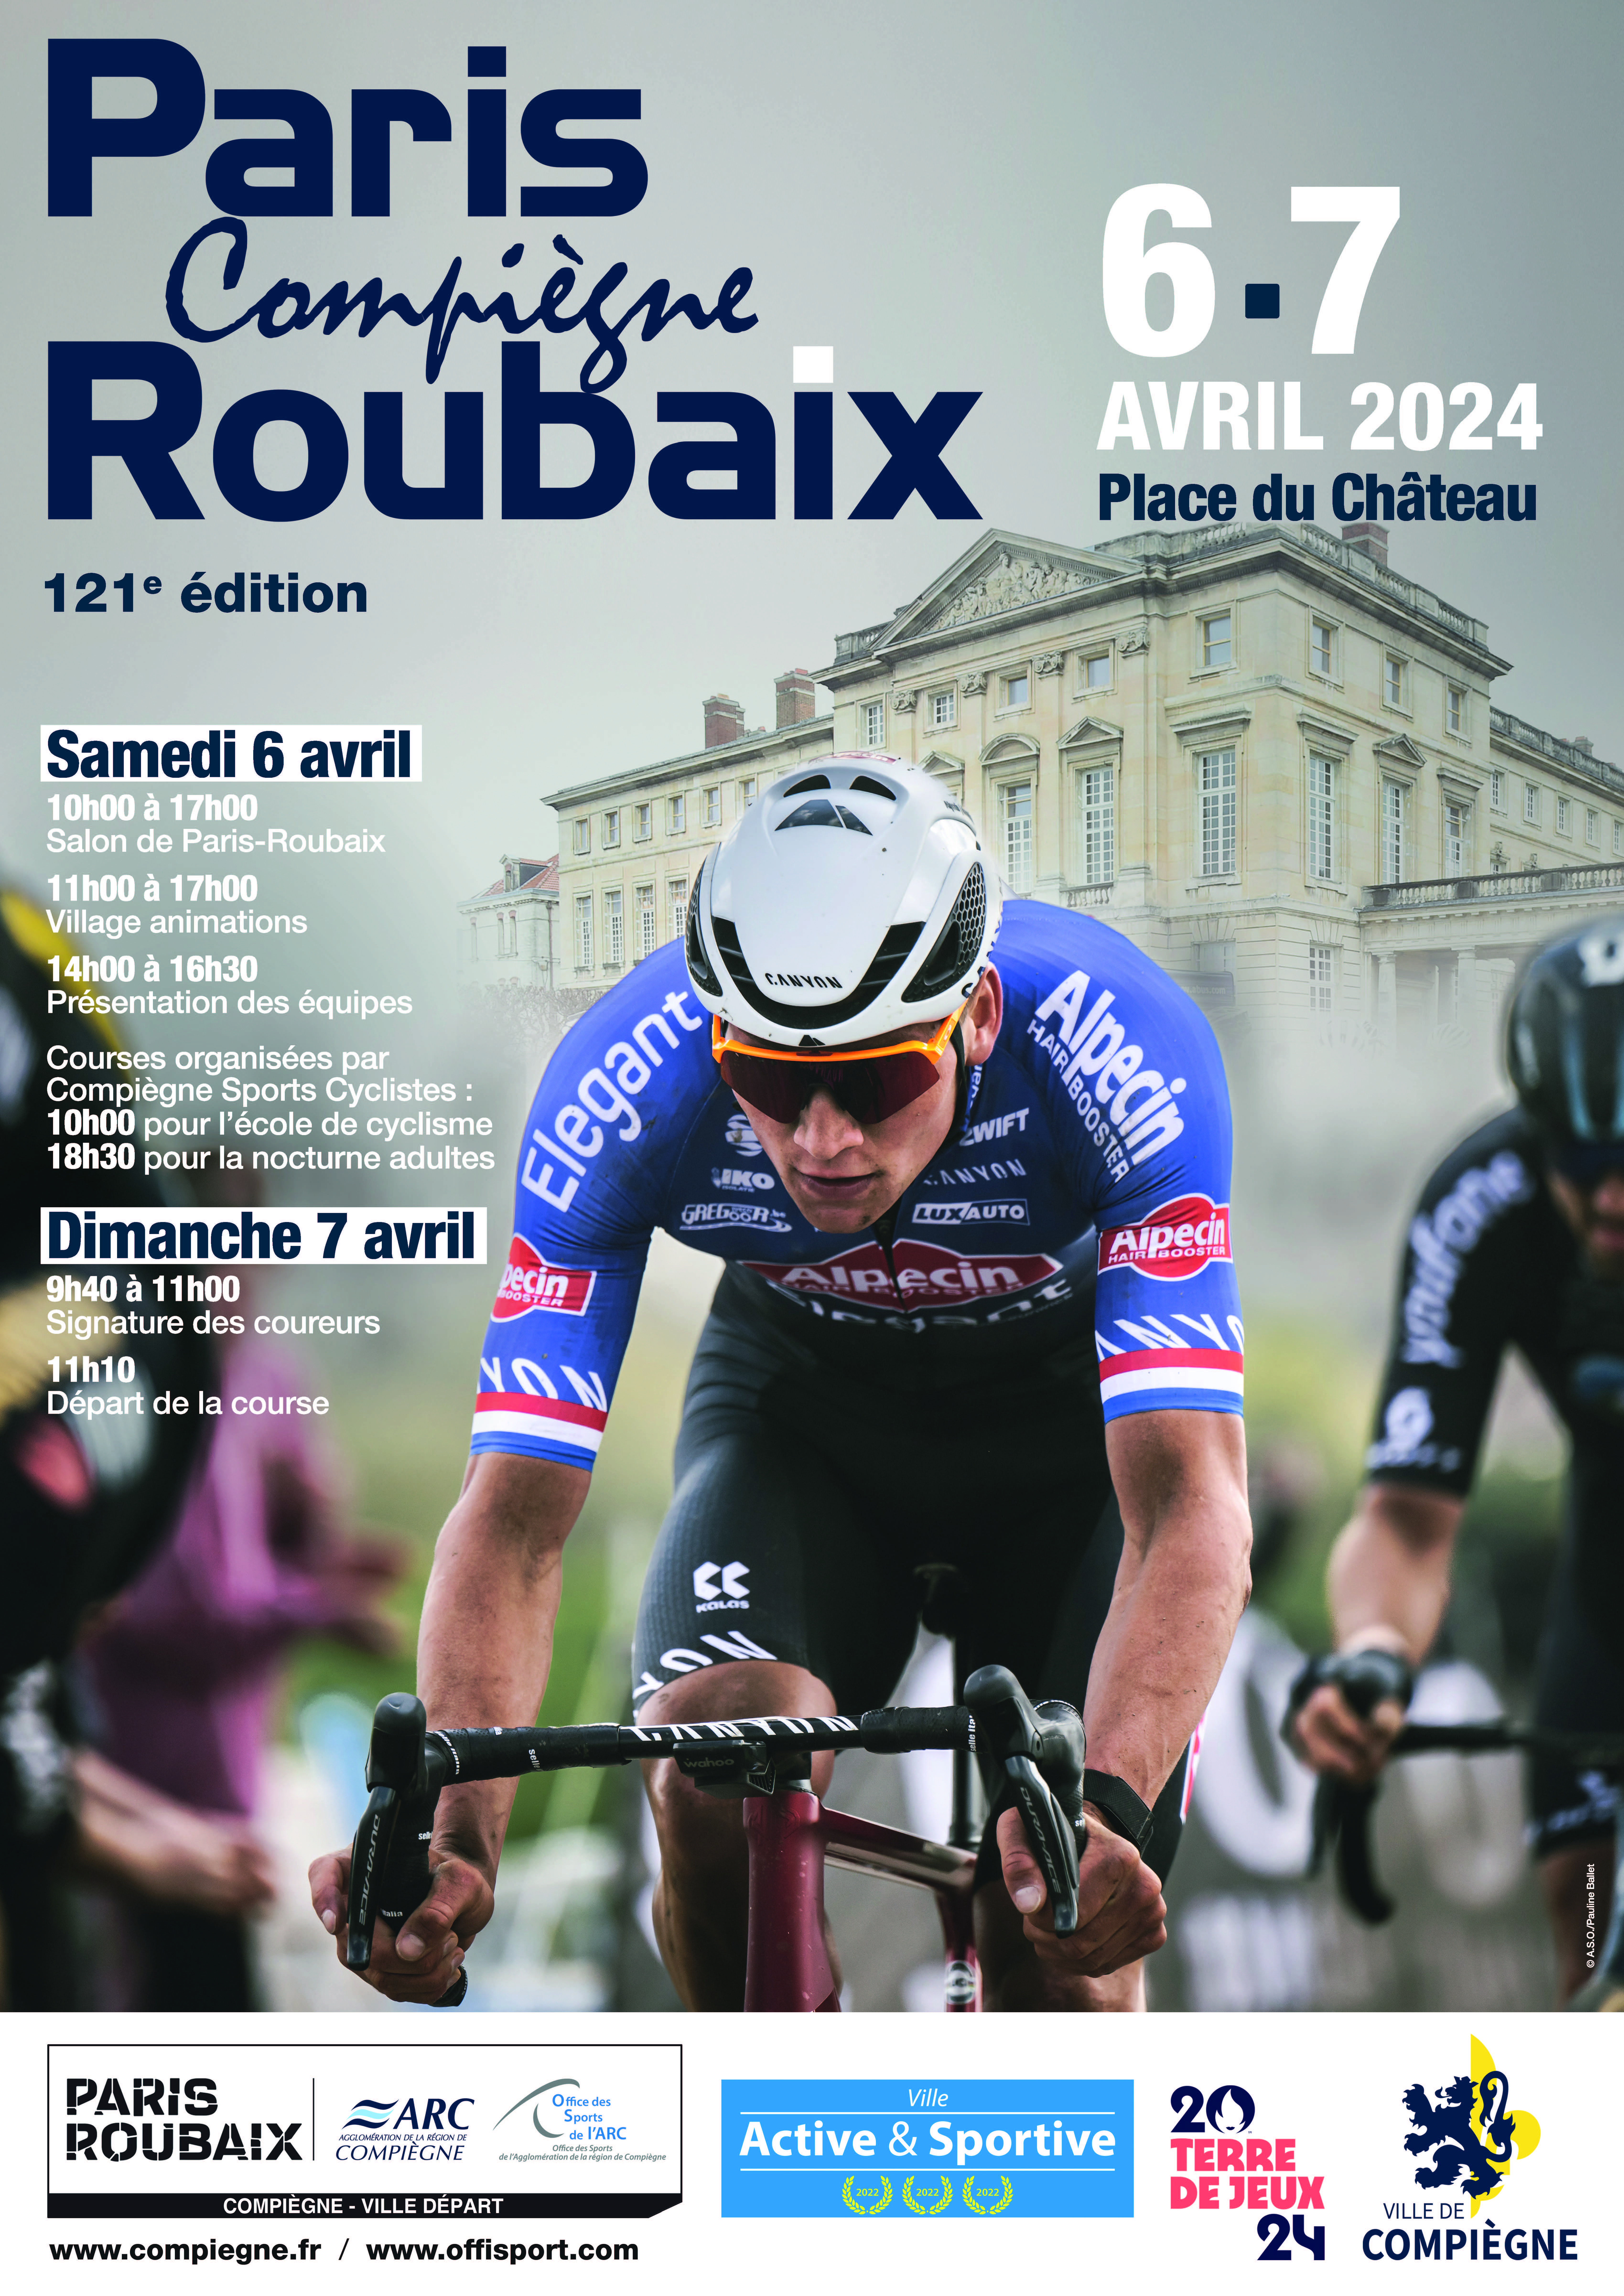 Paris-Roubaix 121ème édition